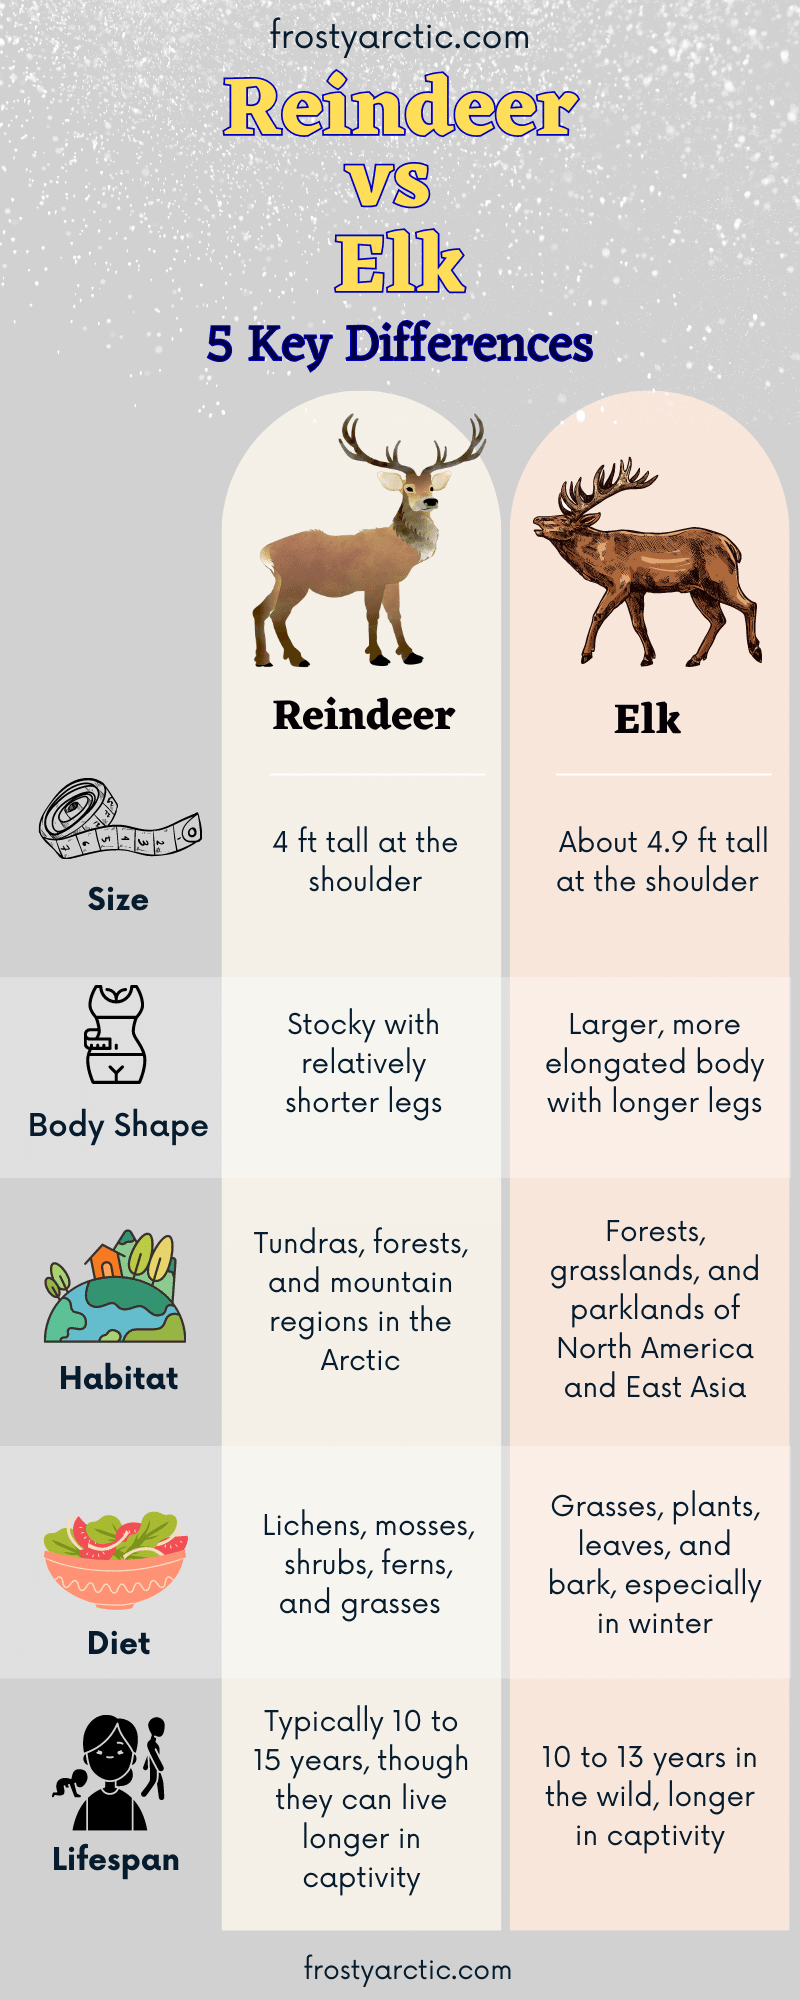 Reindeer-vs-Elk
